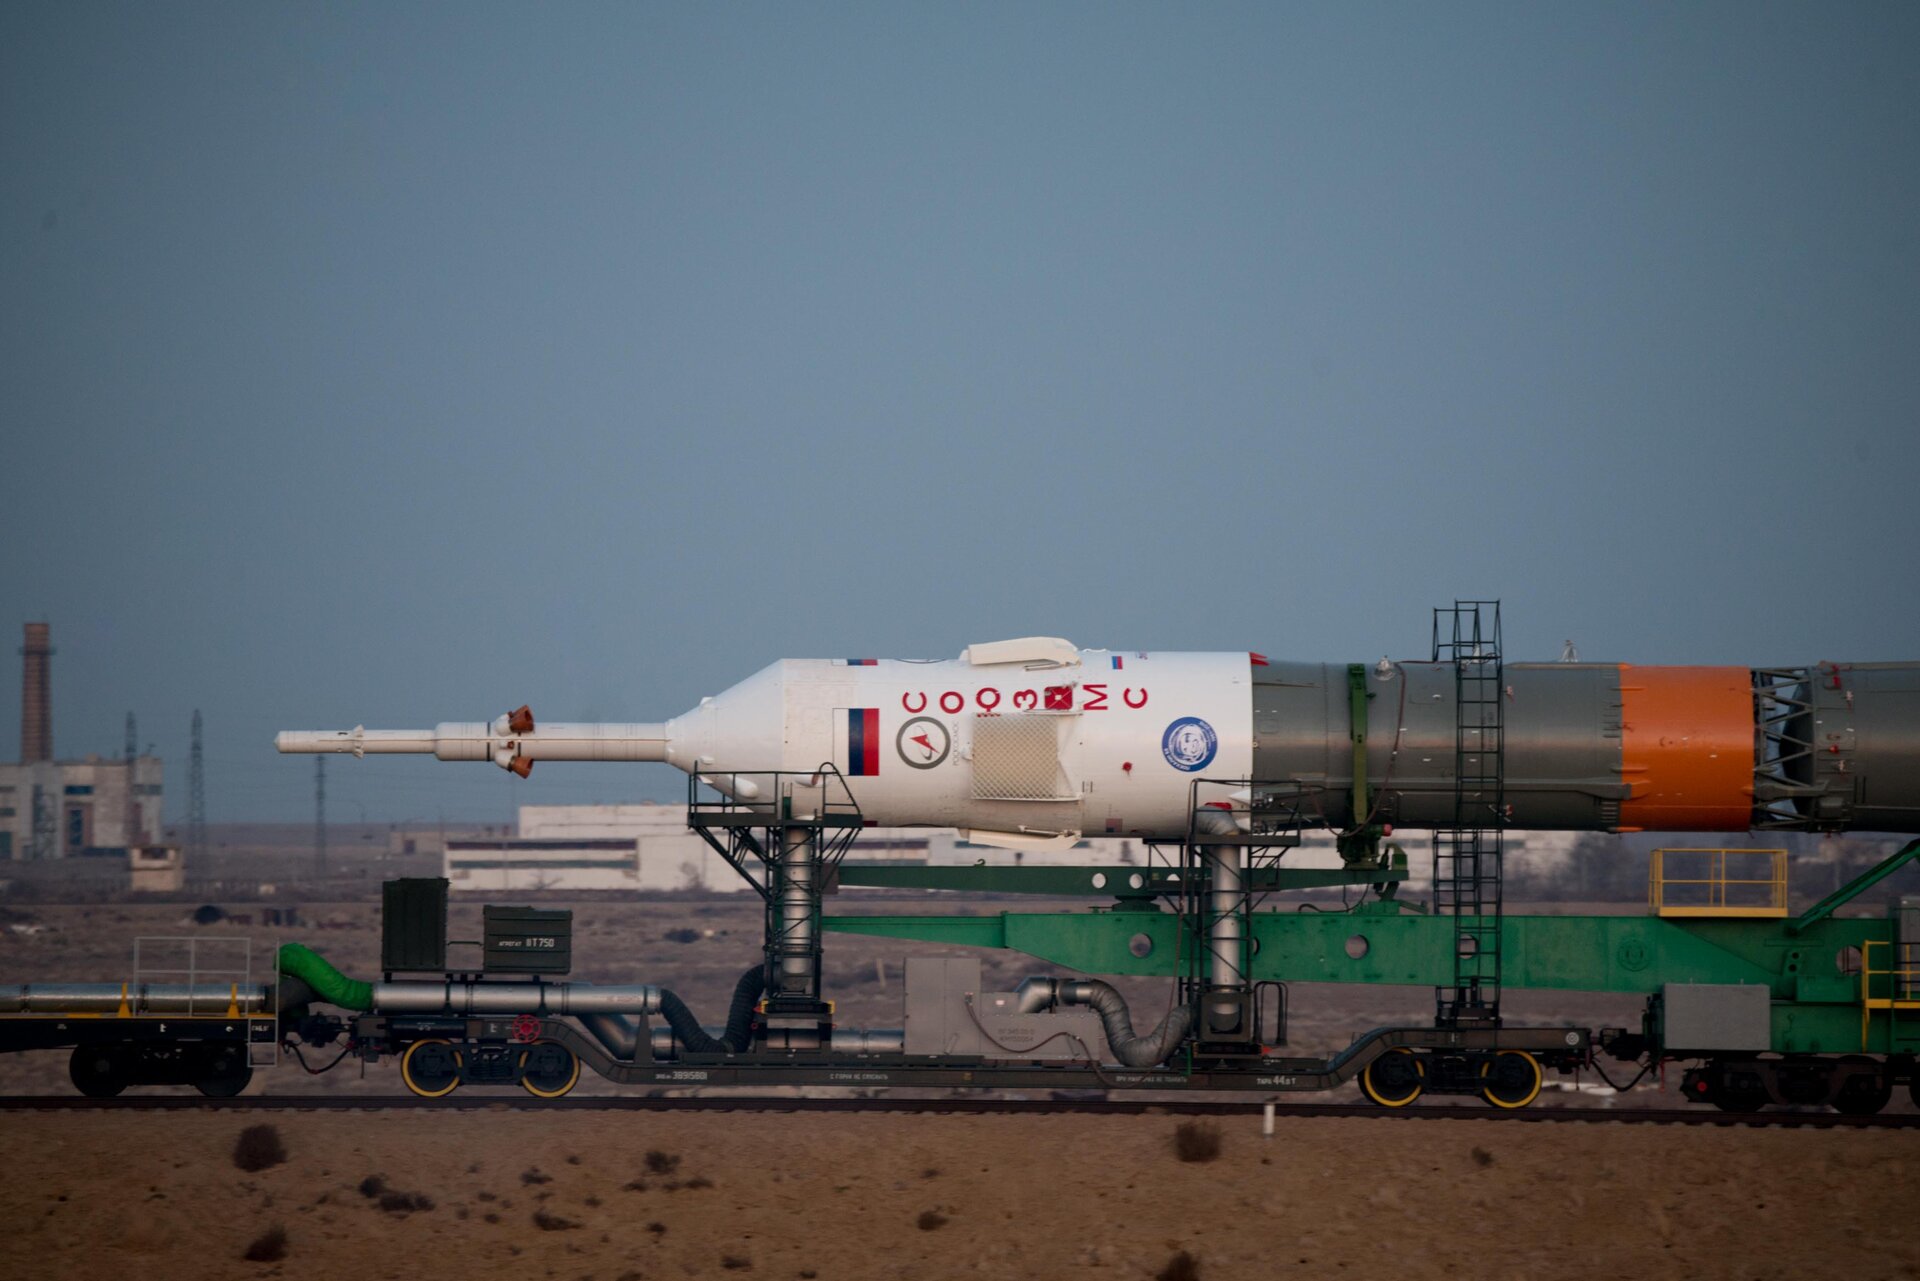 Soyuz spacecraft roll out